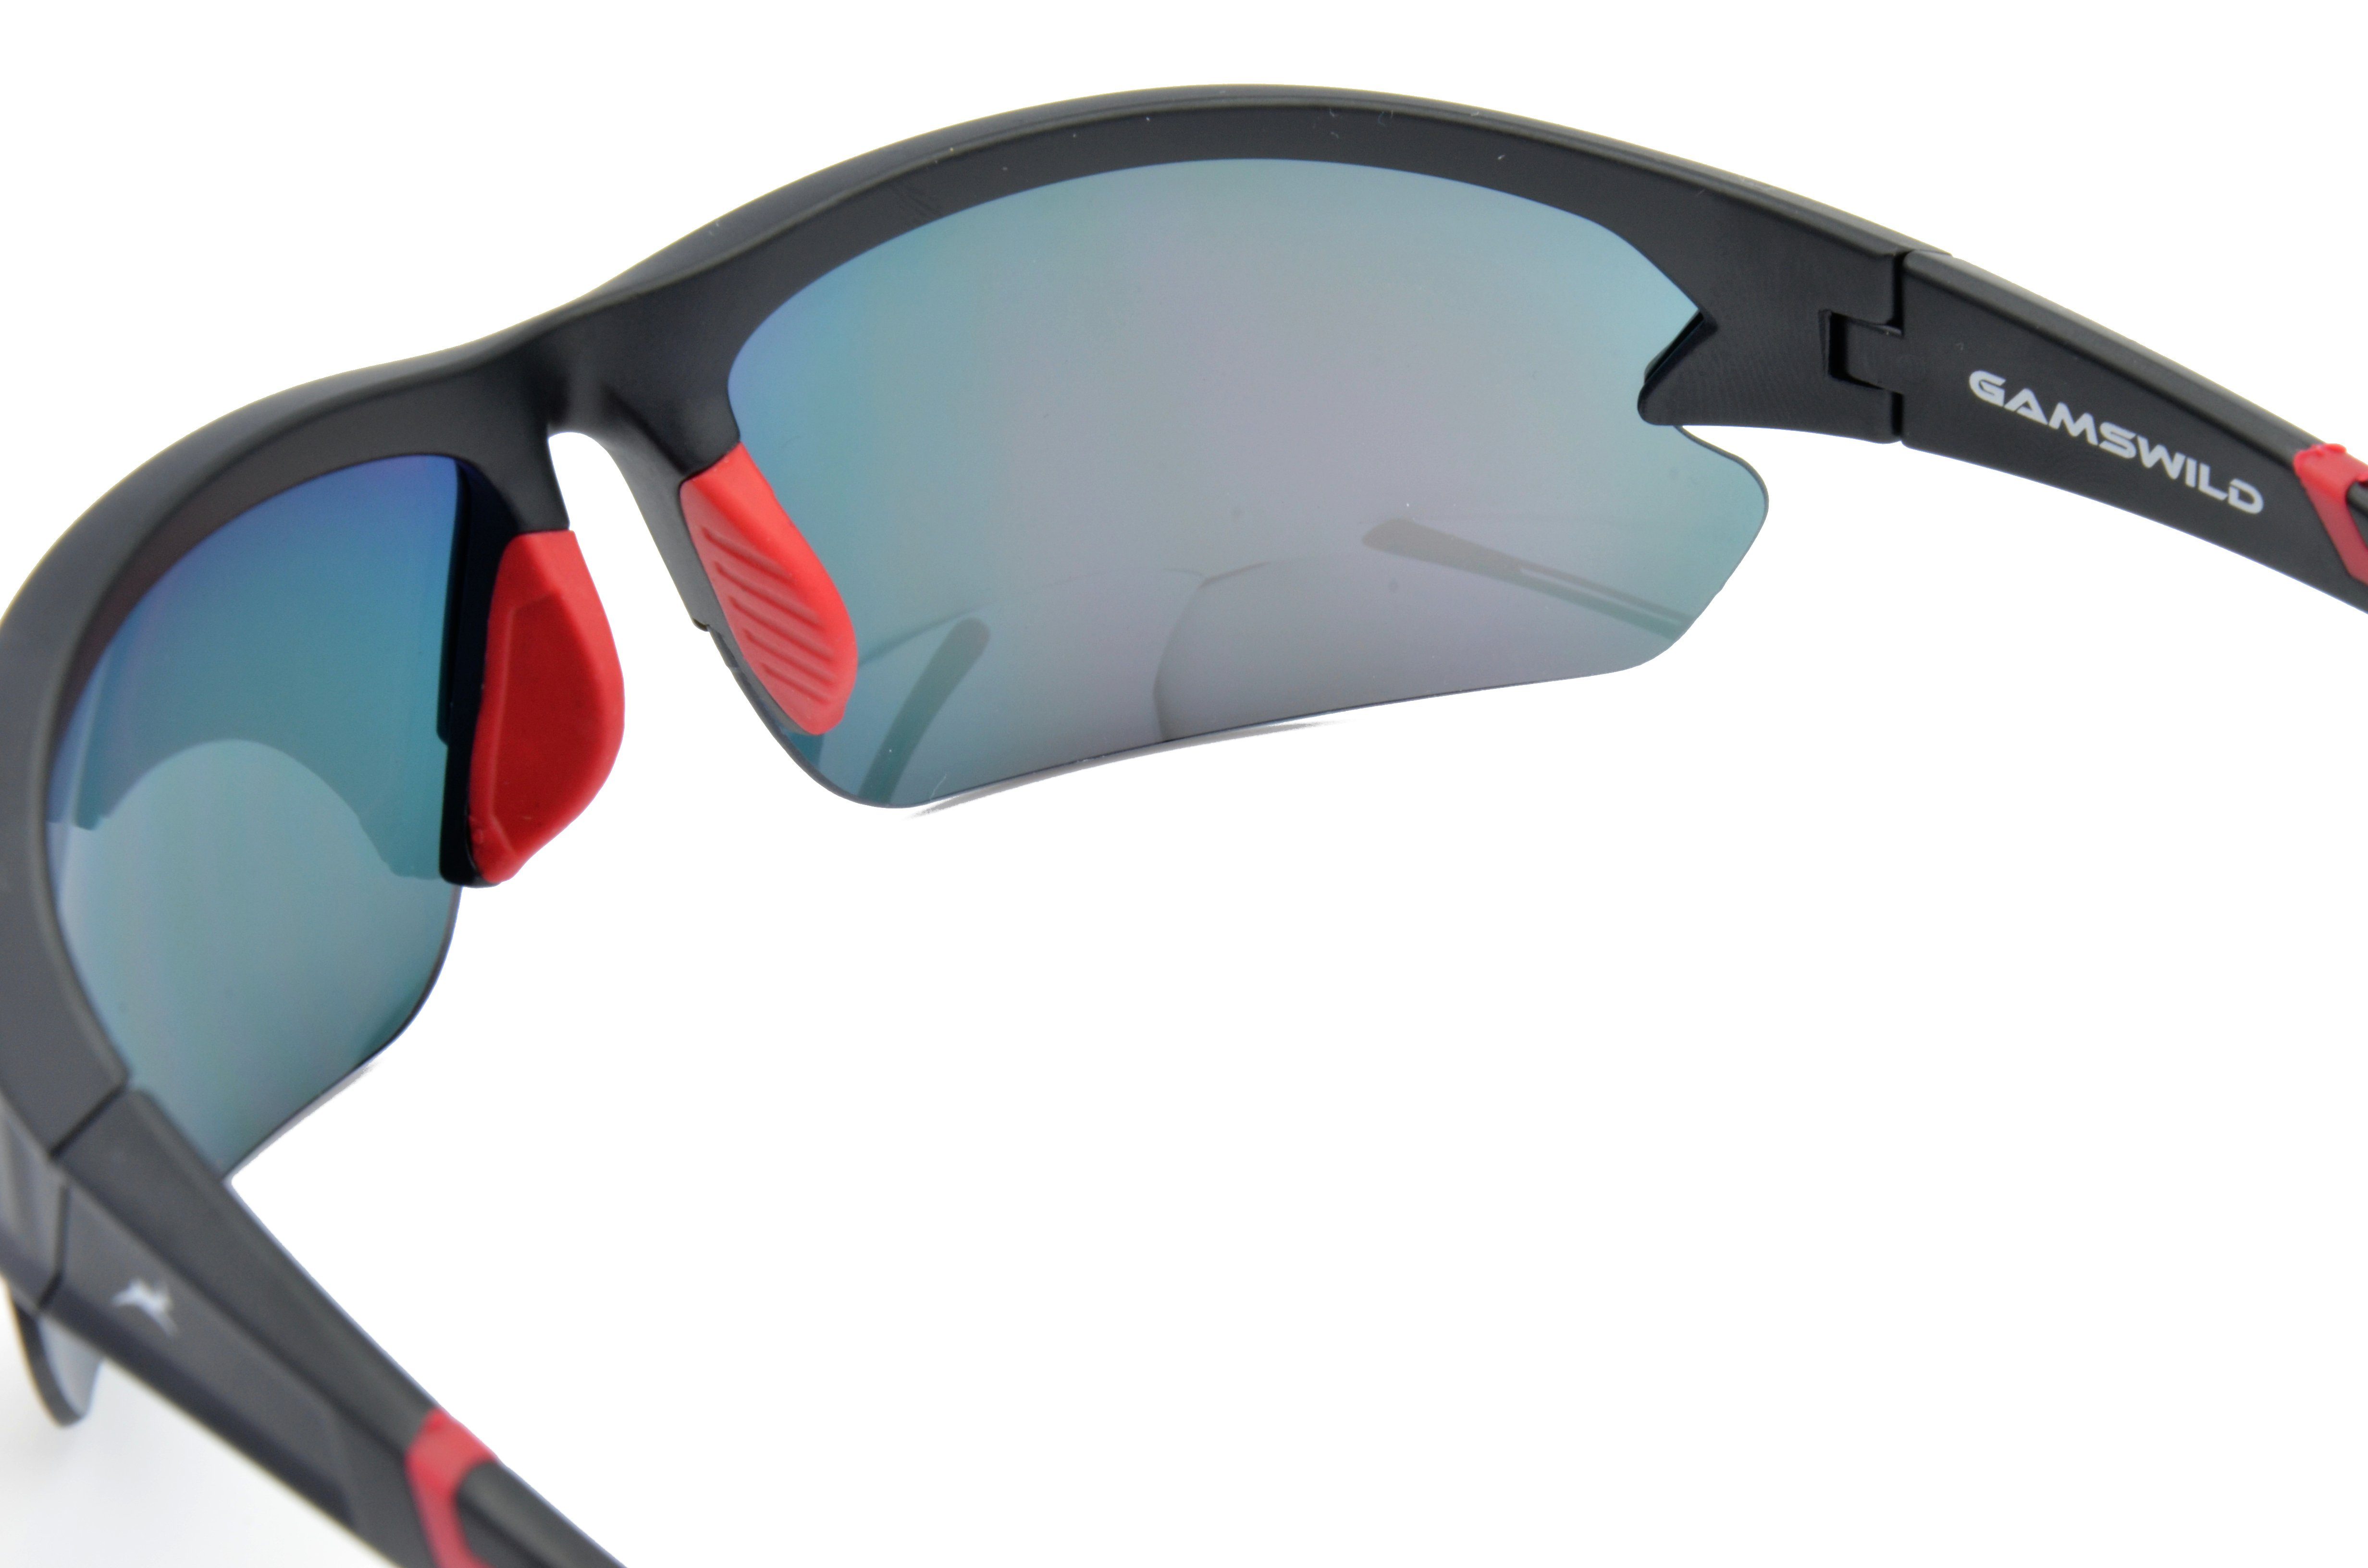 violett, blau, Halbrahmenbrille Sonnenbrille Gamswild Sportbrille Skibrille Damen rot-orange, Herren Unisex, Fahrradbrille WS6028